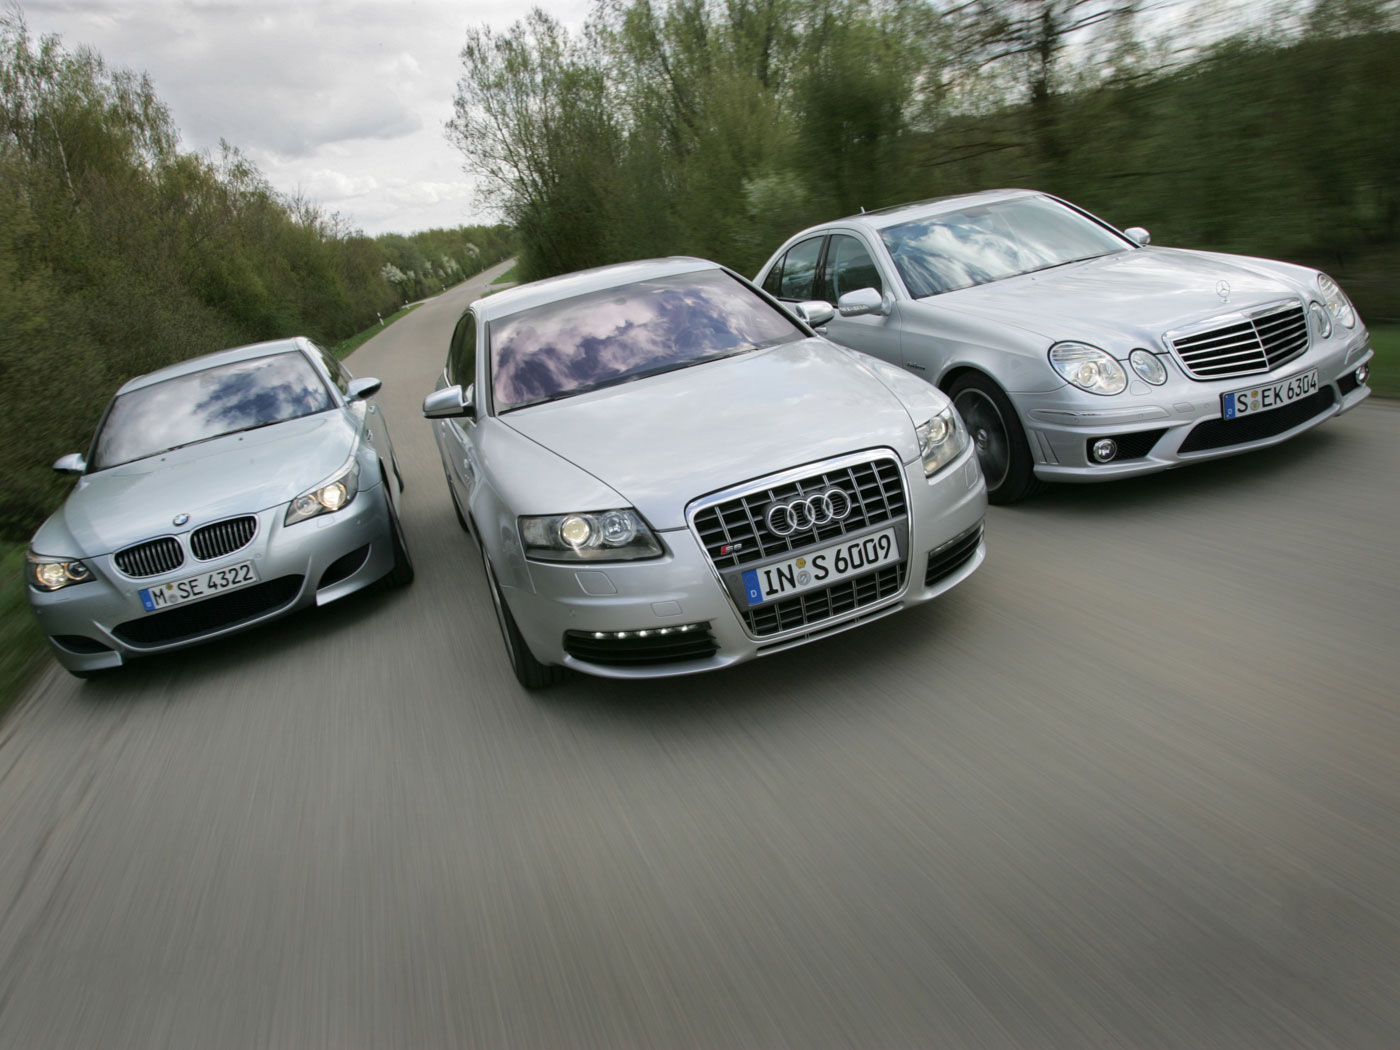 Четверо машин. БМВ мерс 2000. BMW Mercedes Audi Volkswagen 2022. Машины в ряд. Несколько автомобилей.